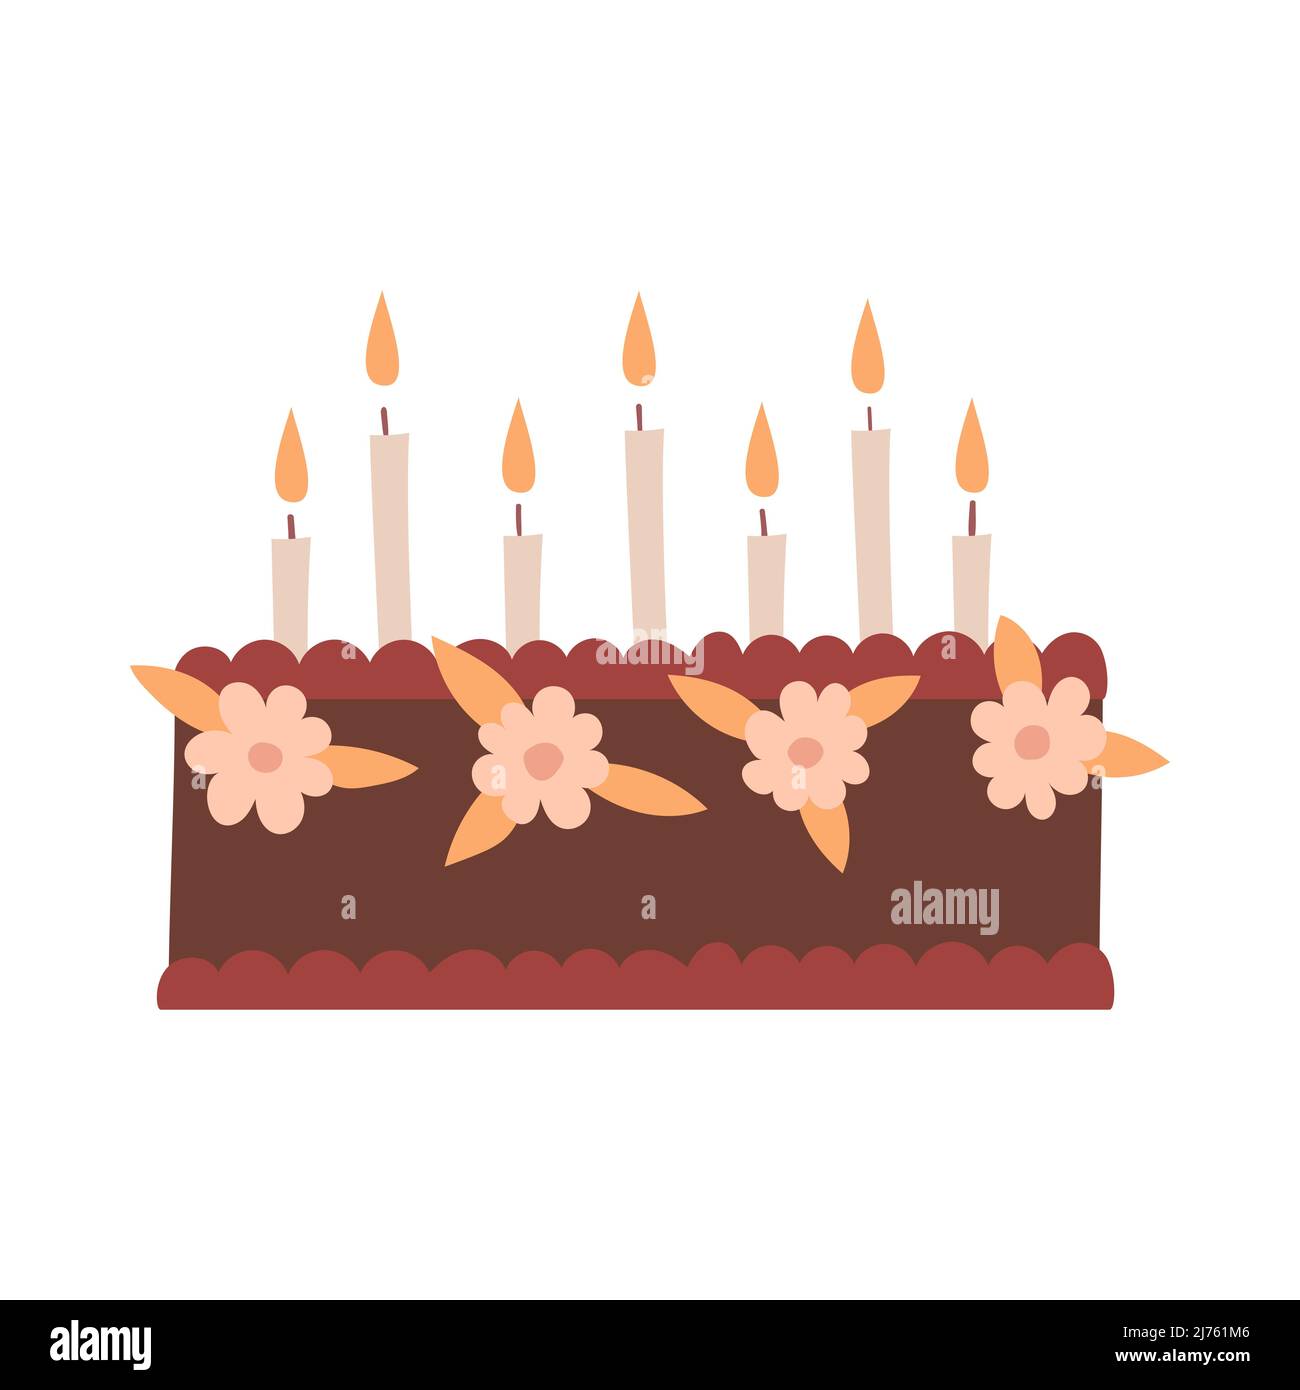 Eine Geburtstagstorte mit Blumen, Creme und Kerzen. Süßes Essen, Gebäck. Dekoratives Element zum Valentinstag, Geburtstag. Einfache flache Farbe vecto Stock Vektor